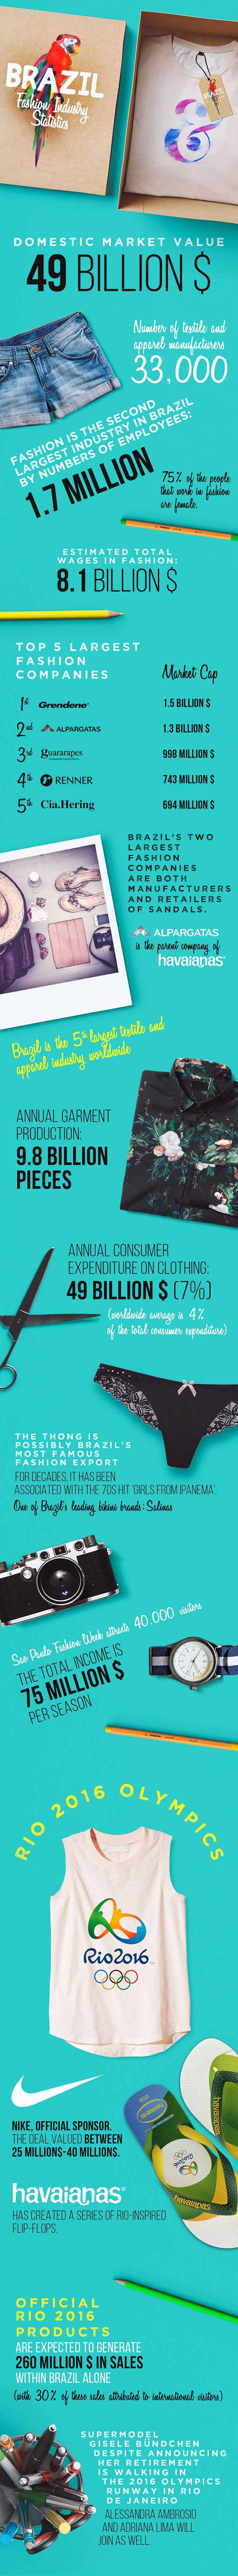 Statistiken der Modebranche - Infografik Teil 3: Brasilien